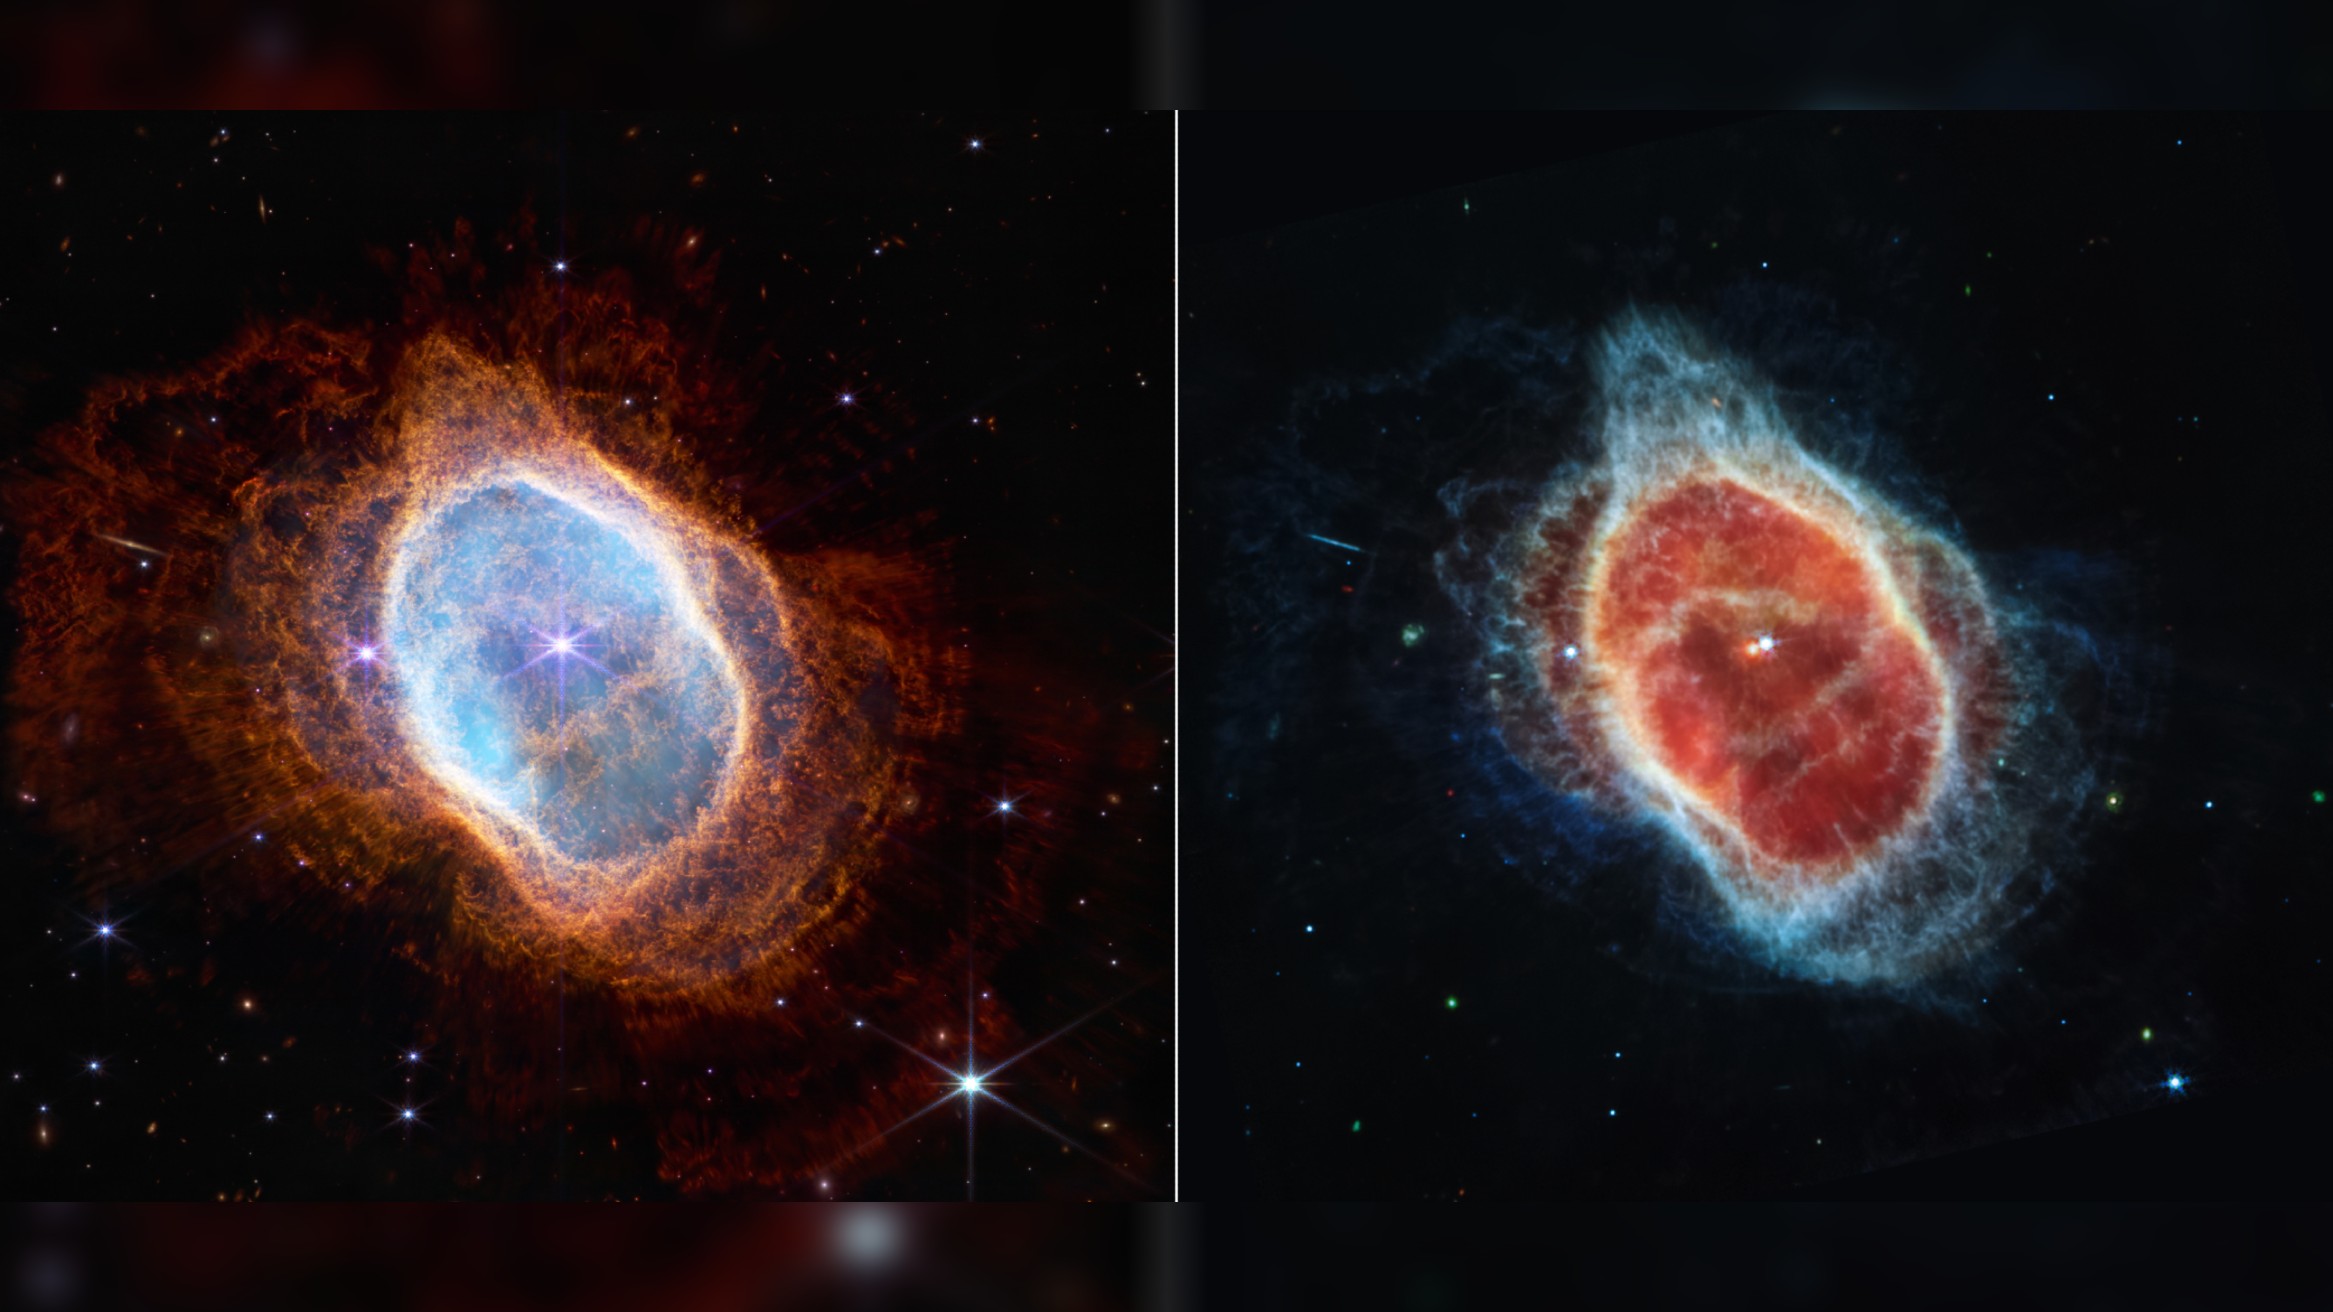 Une comparaison côte à côte d'images de la nébuleuse de l'anneau sud prises dans le proche infrarouge (à gauche) et dans l'infrarouge moyen (à droite).  L'image de gauche montre des rubans orange vaporeux de gaz et de poussière entourant une forme ovale 